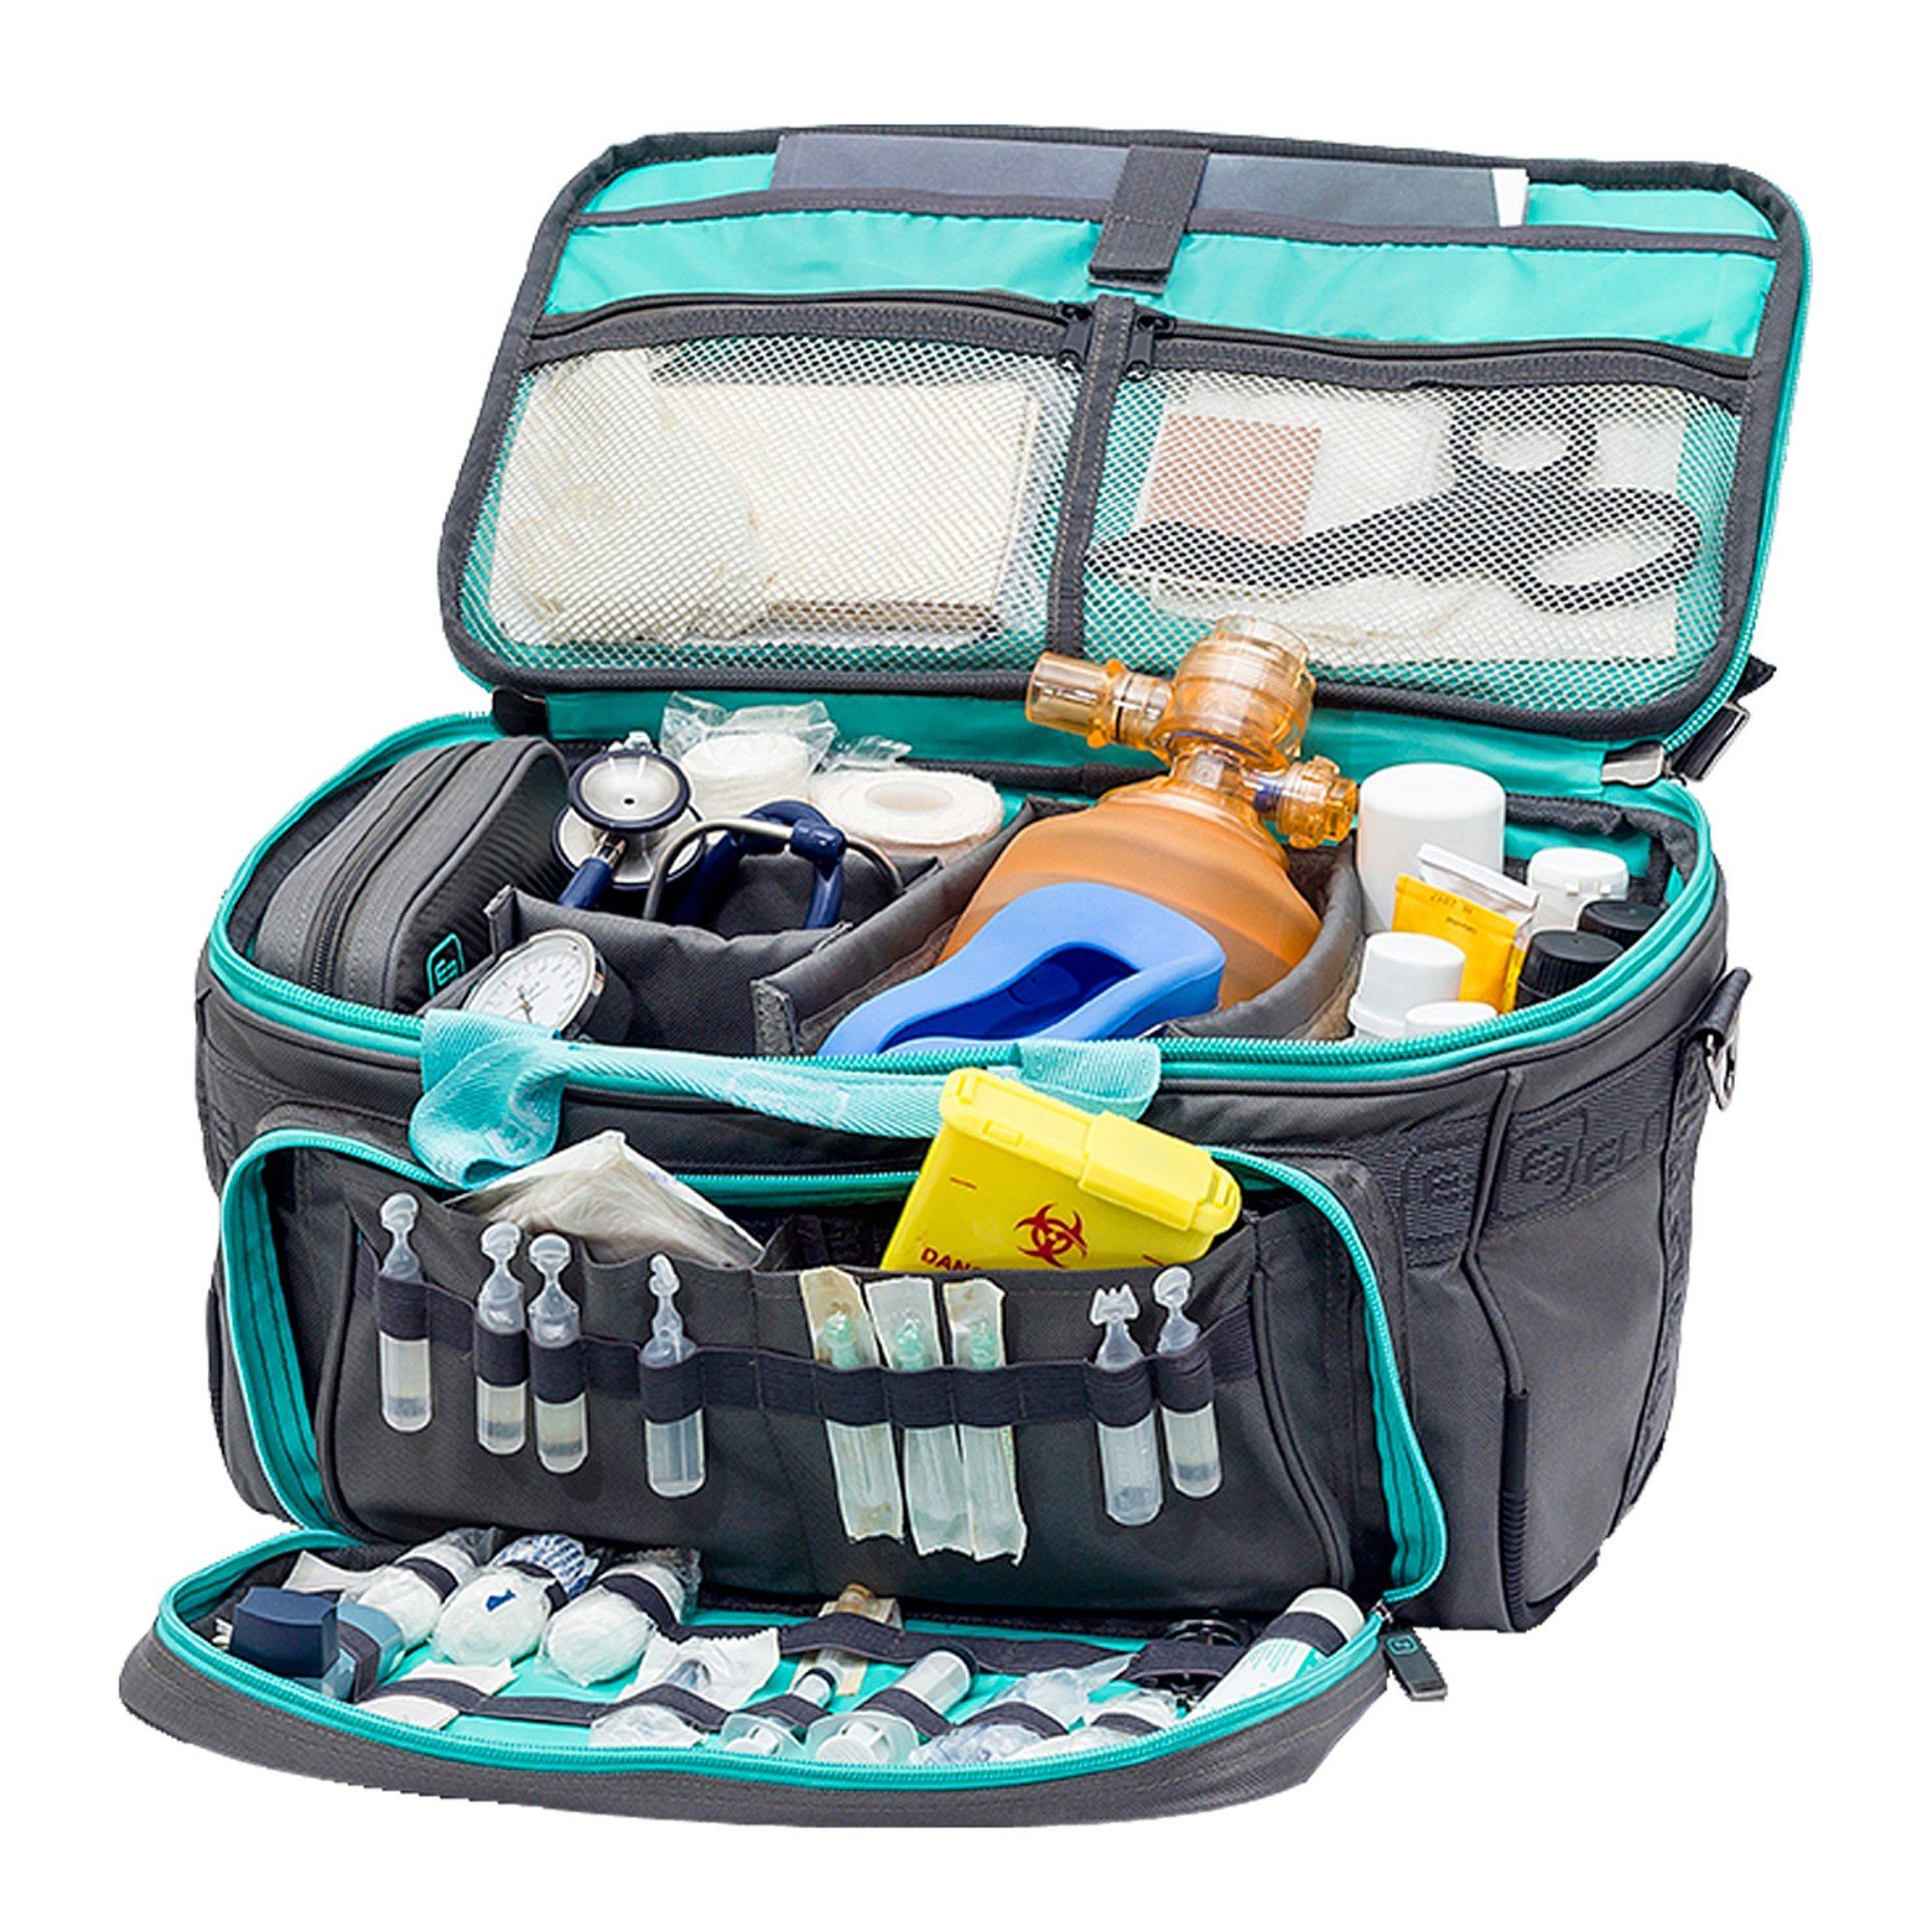 40 Softbag-Arzttasche Polyester Elite cm 25 Bags GP´S Grau-türkis Elite Arzttasche x x Bags 21